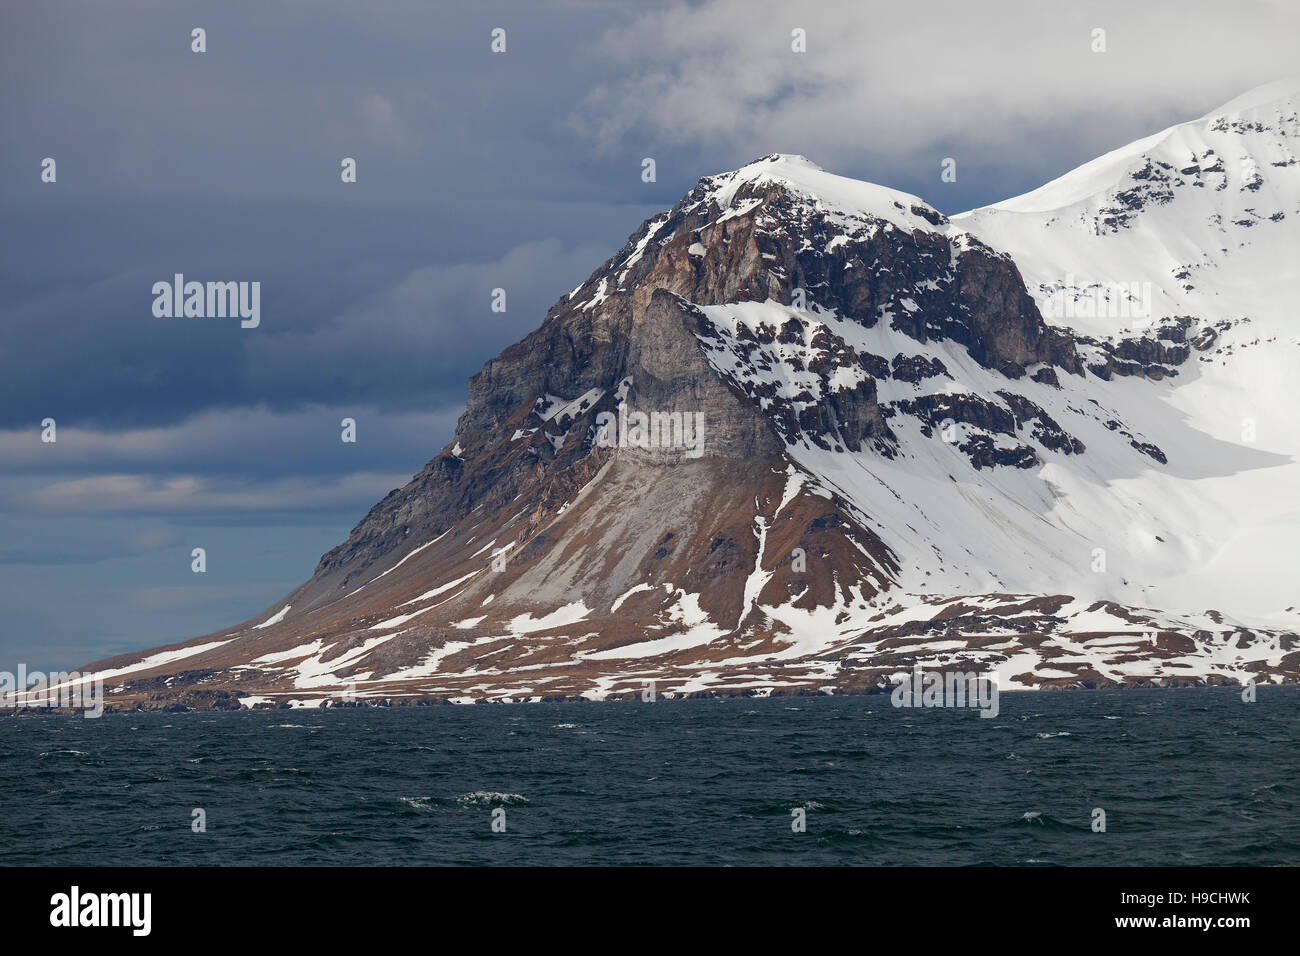 Alkhornet, roches carbonatées métamorphisées et colonie d'oiseaux de mer dans la région de Isfjorden, Spitzberg Svalbard / Banque D'Images